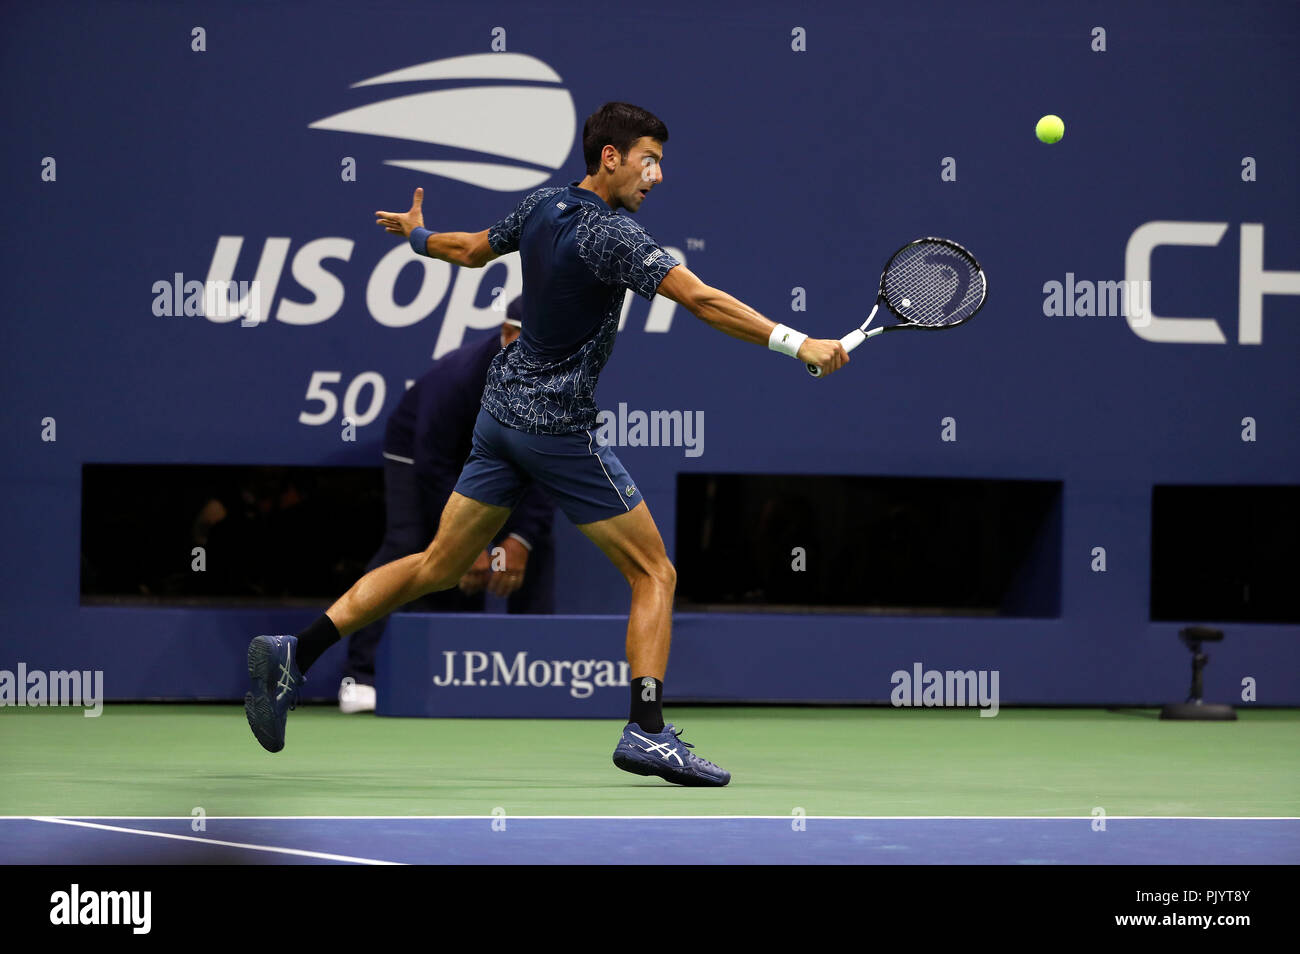 Flushing Meadows, New York, USA. 9 septembre 2018 : US Open de Tennis : Novak Djokovic de Serbie hits une backhnd retour à Juan Martin del Potro, de l'Argentine à l'US Open finale chez les hommes. Djokovic a remporté le match en trois sets pour recueillir son troisième US Open, et le 14ème titre du Grand Chelem. Crédit : Adam Stoltman/Alamy Live News Banque D'Images